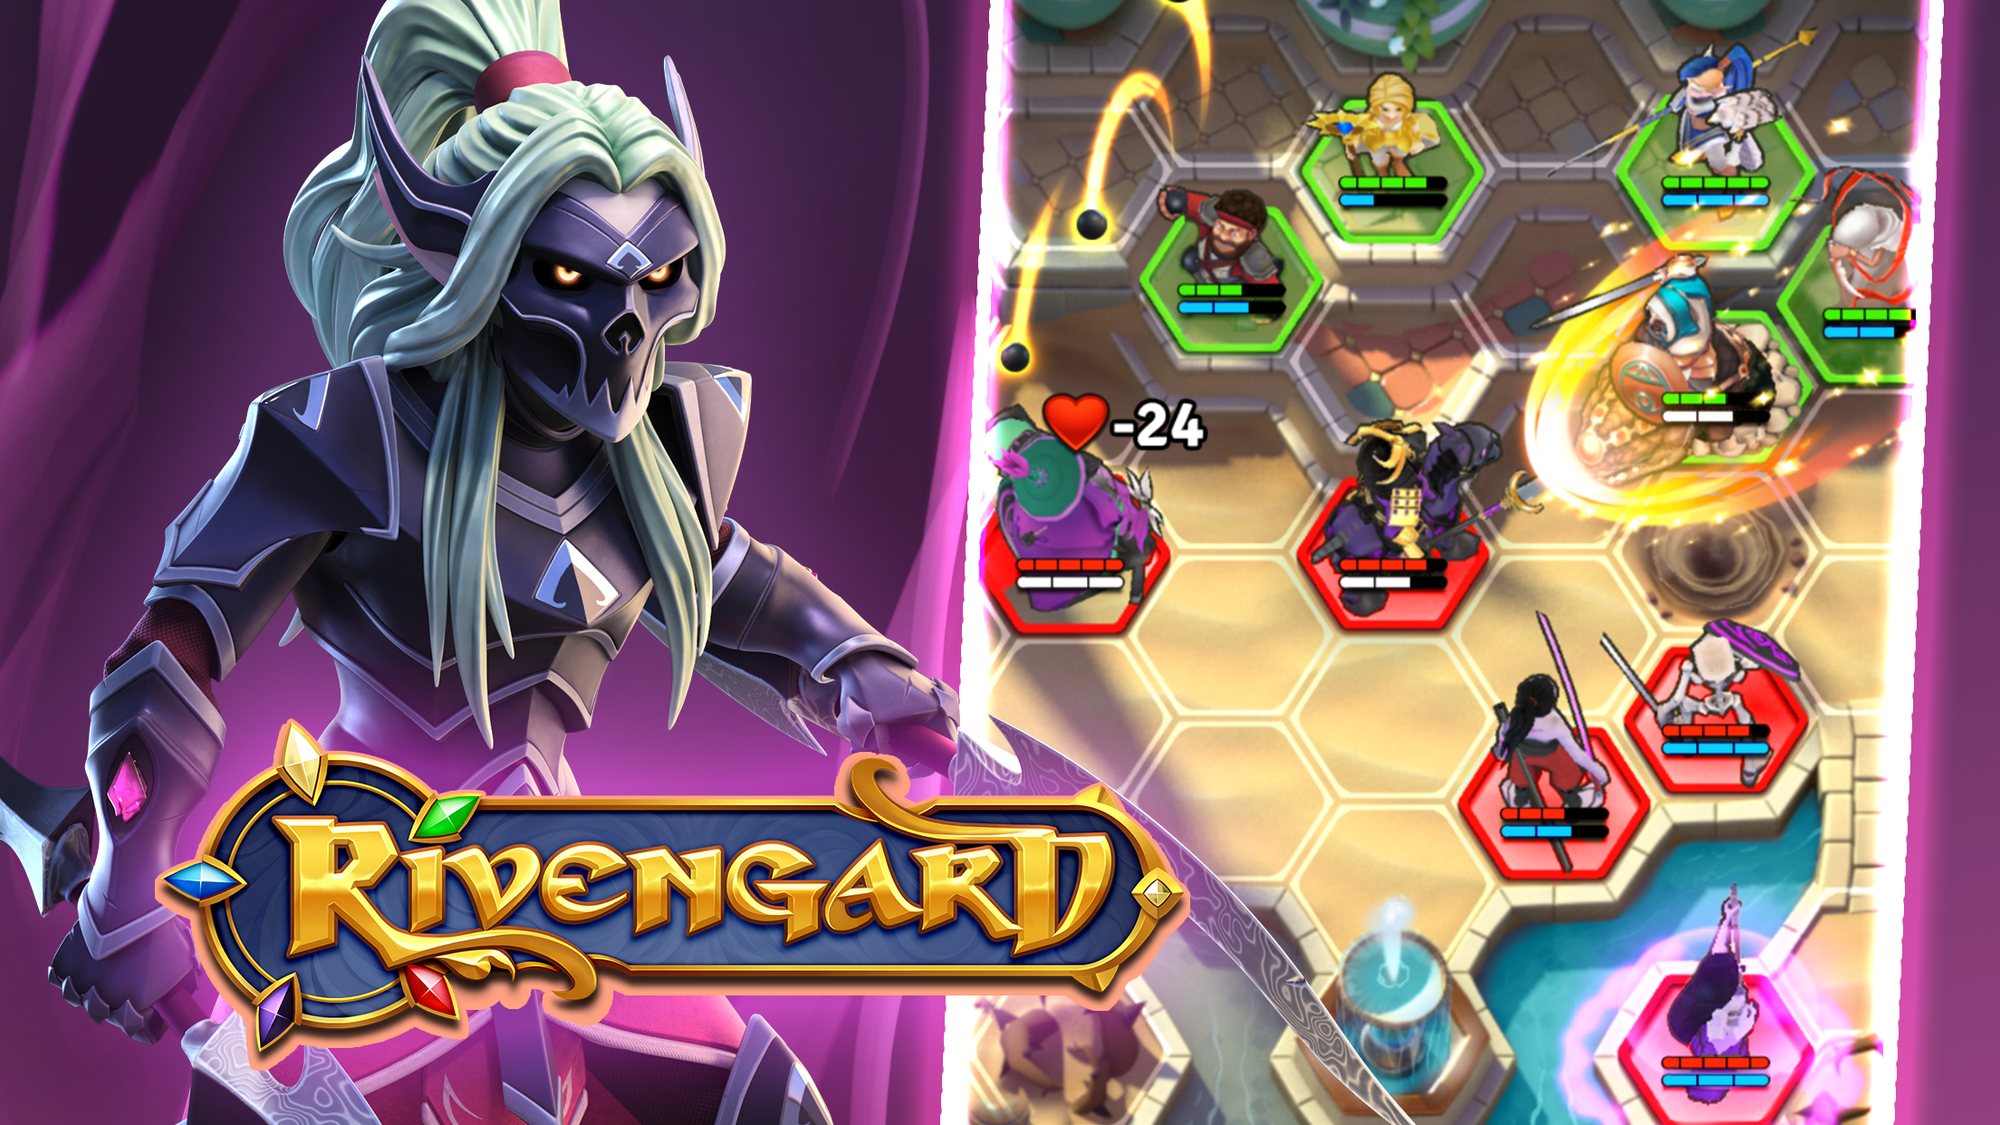 Rivengard - Thêm một tựa game chiến thuật hấp dẫn để khởi đầu năm mới 2023 - Ảnh 1.